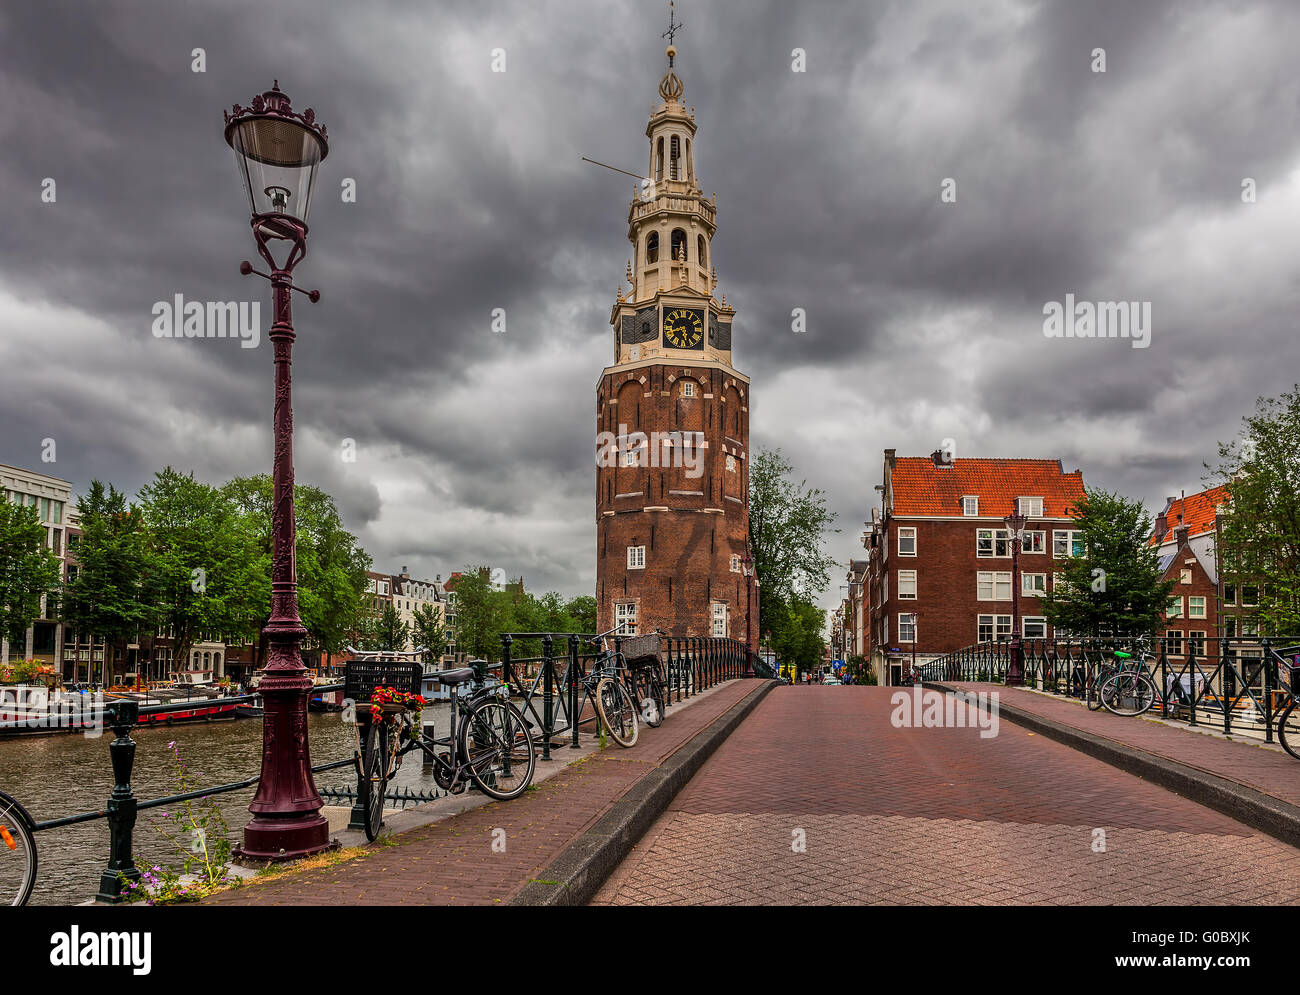 Laterne auf die Brücke und Montelbaansturm Turm unter dramatischen Wolkenhimmel in Amsterdam, Niederlande. Stockfoto